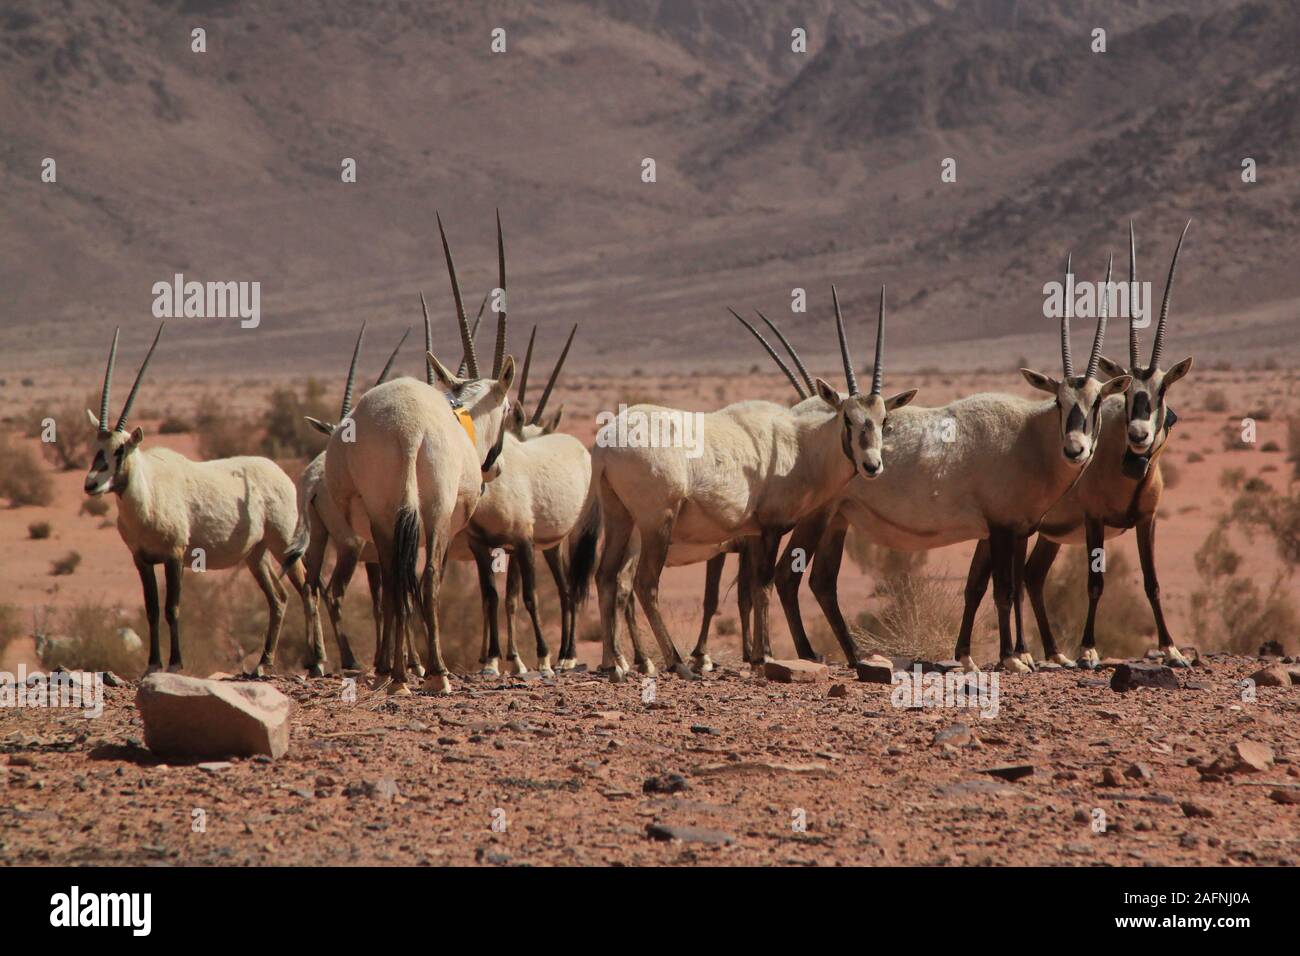 Arabische Oryx (Oryx leucoryx) Im geschützten Bereich im Wadi Rum. Die Weiße Oryx wurde in der Wildnis ausgestorben seit 1972. Die wiedereinführung Projekt für Jordanien begann, als die Environment Agency Abu Dhabi (EAD) und die Al Aqaba Special Economic Zone Authority eine Sponsorenvereinbarung im April 2007 unterzeichnet. Im Rahmen dieser Vereinbarung, EAD fördert das Projekt mit der Wiedereinführung der arabischen Oryx in das Wadi Rum geschützten Bereich, bei der Sanierung der Lebensraum und helfen, den lokalen Bewohnern, ihren Lebensstandard zu verbessern. Der Roten Liste der IUCN stuft noch die Arten als gefährdet. Stockfoto